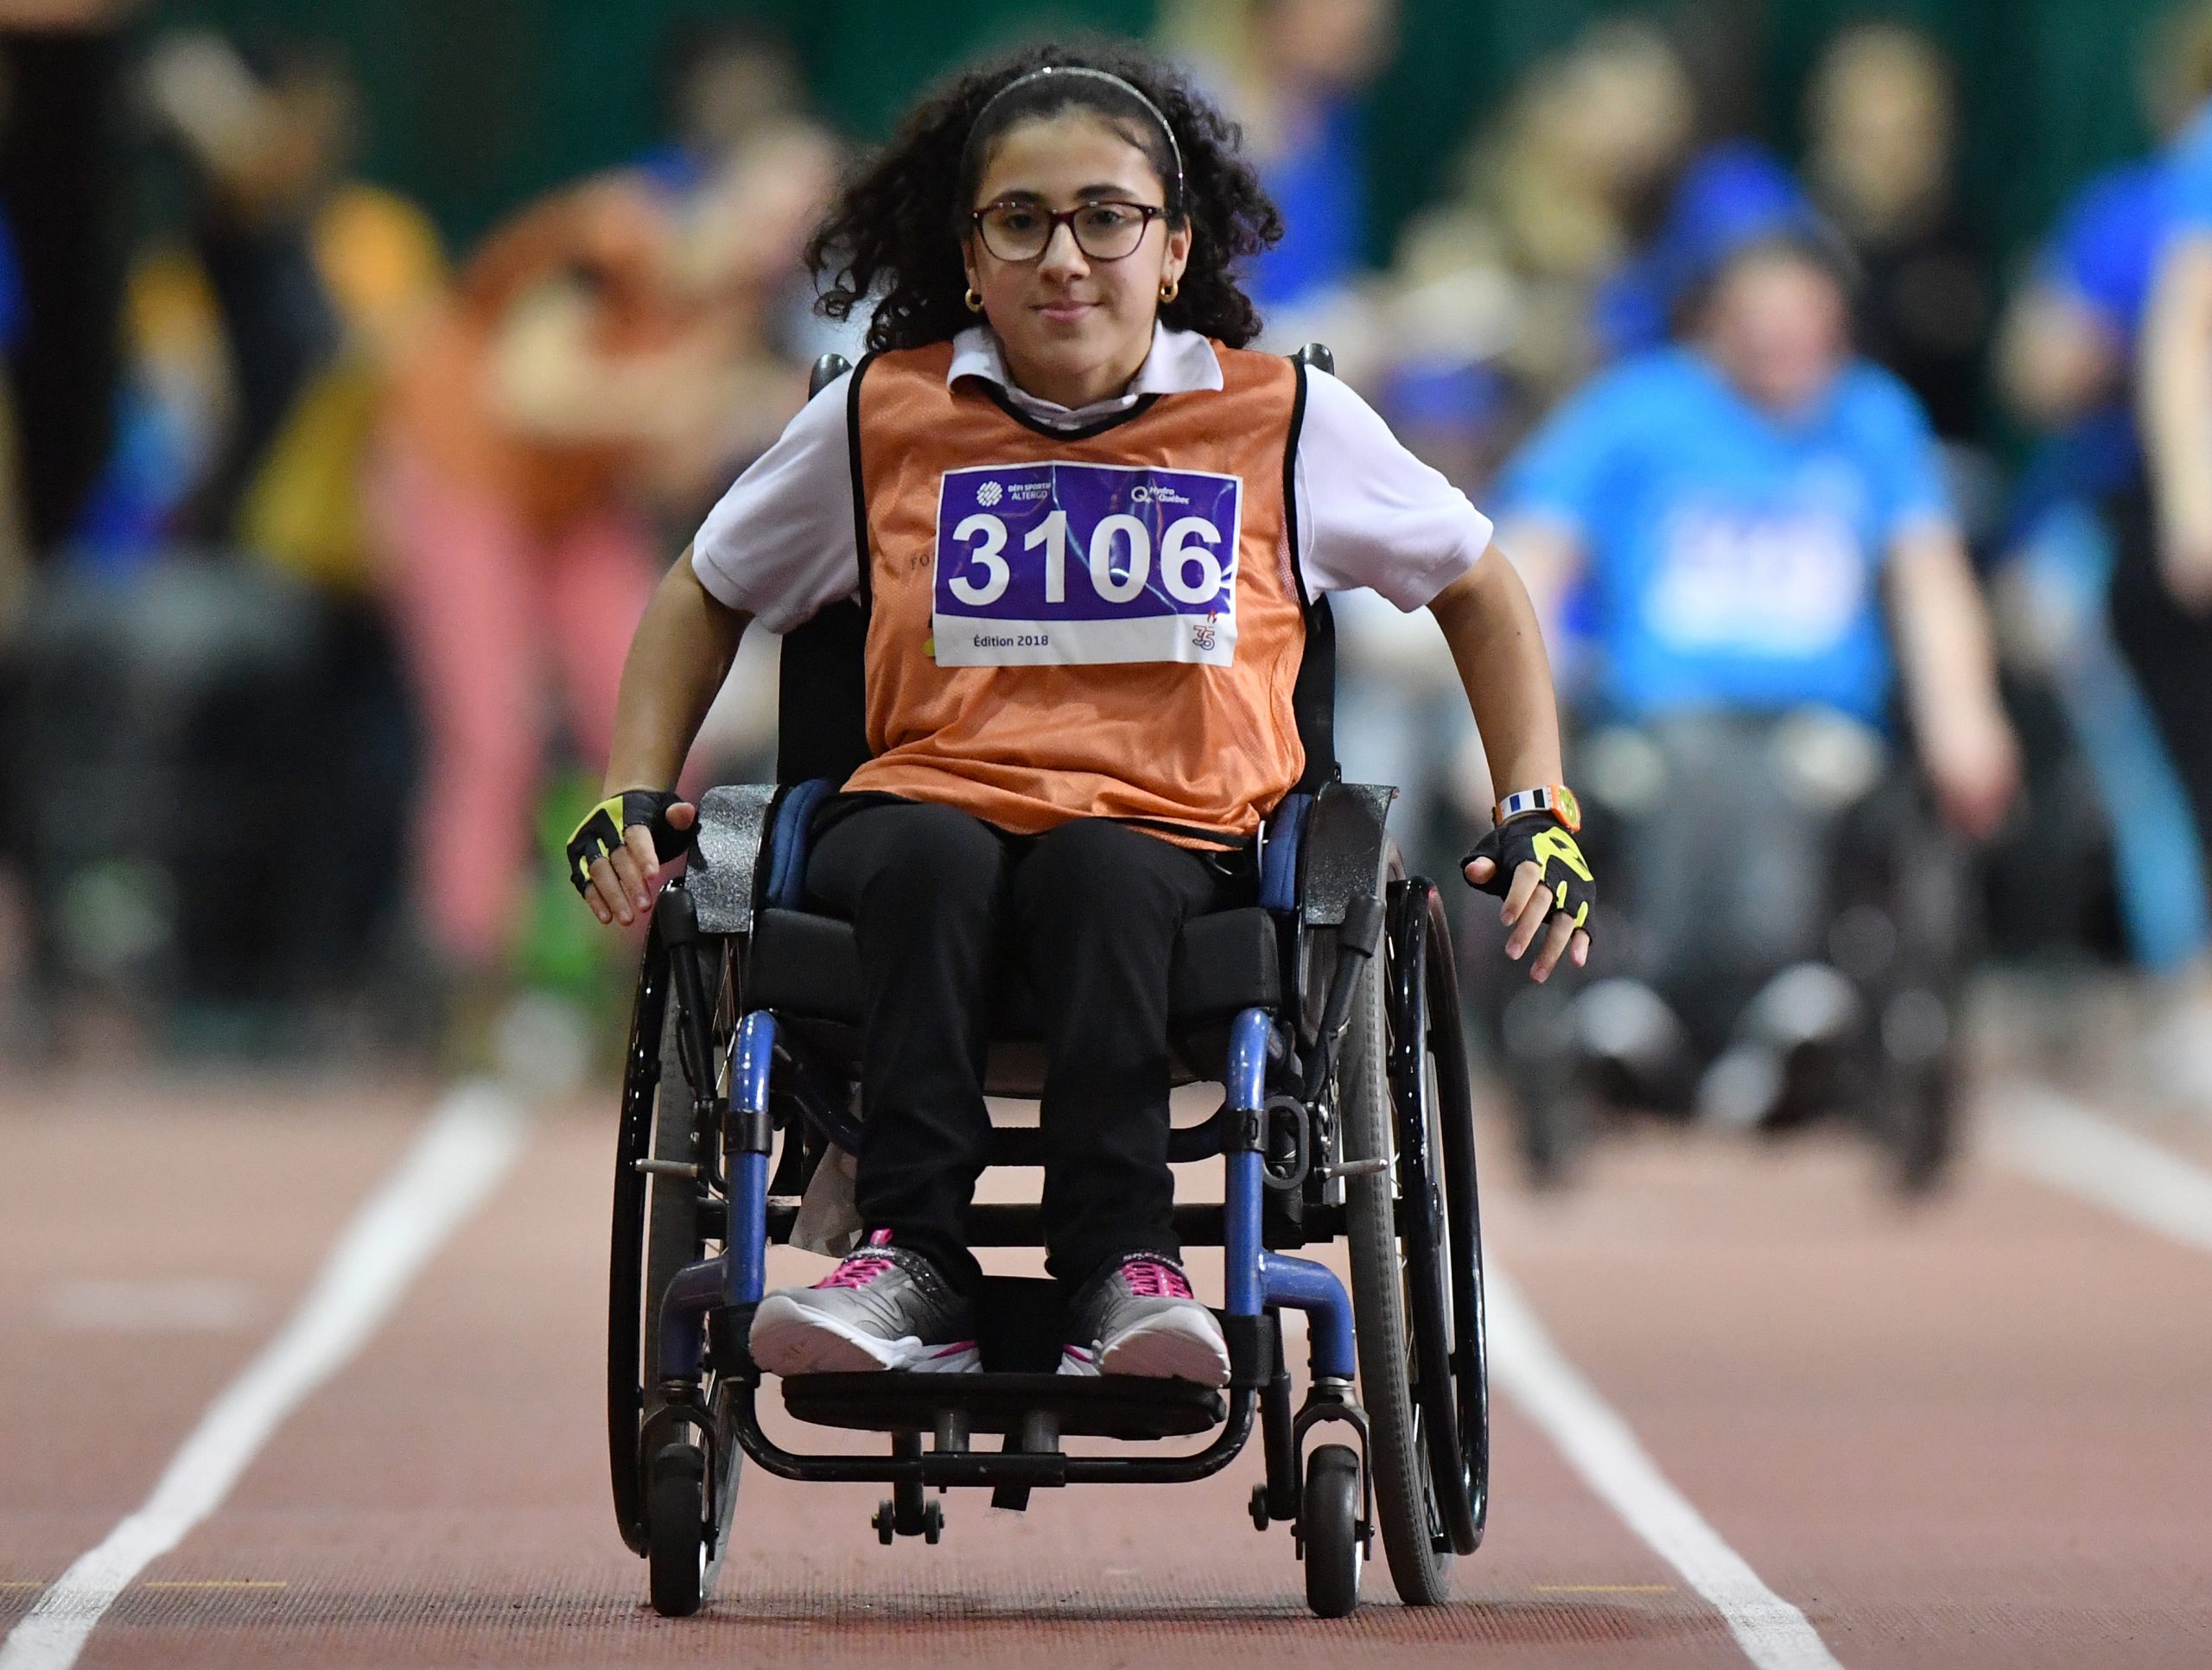 Description de l'image : Au centre, une jeune fille assise sur un fauteuil roulant regarde vers la caméra et compétitionne sur un terrain d'athlétisme lors d'une course.